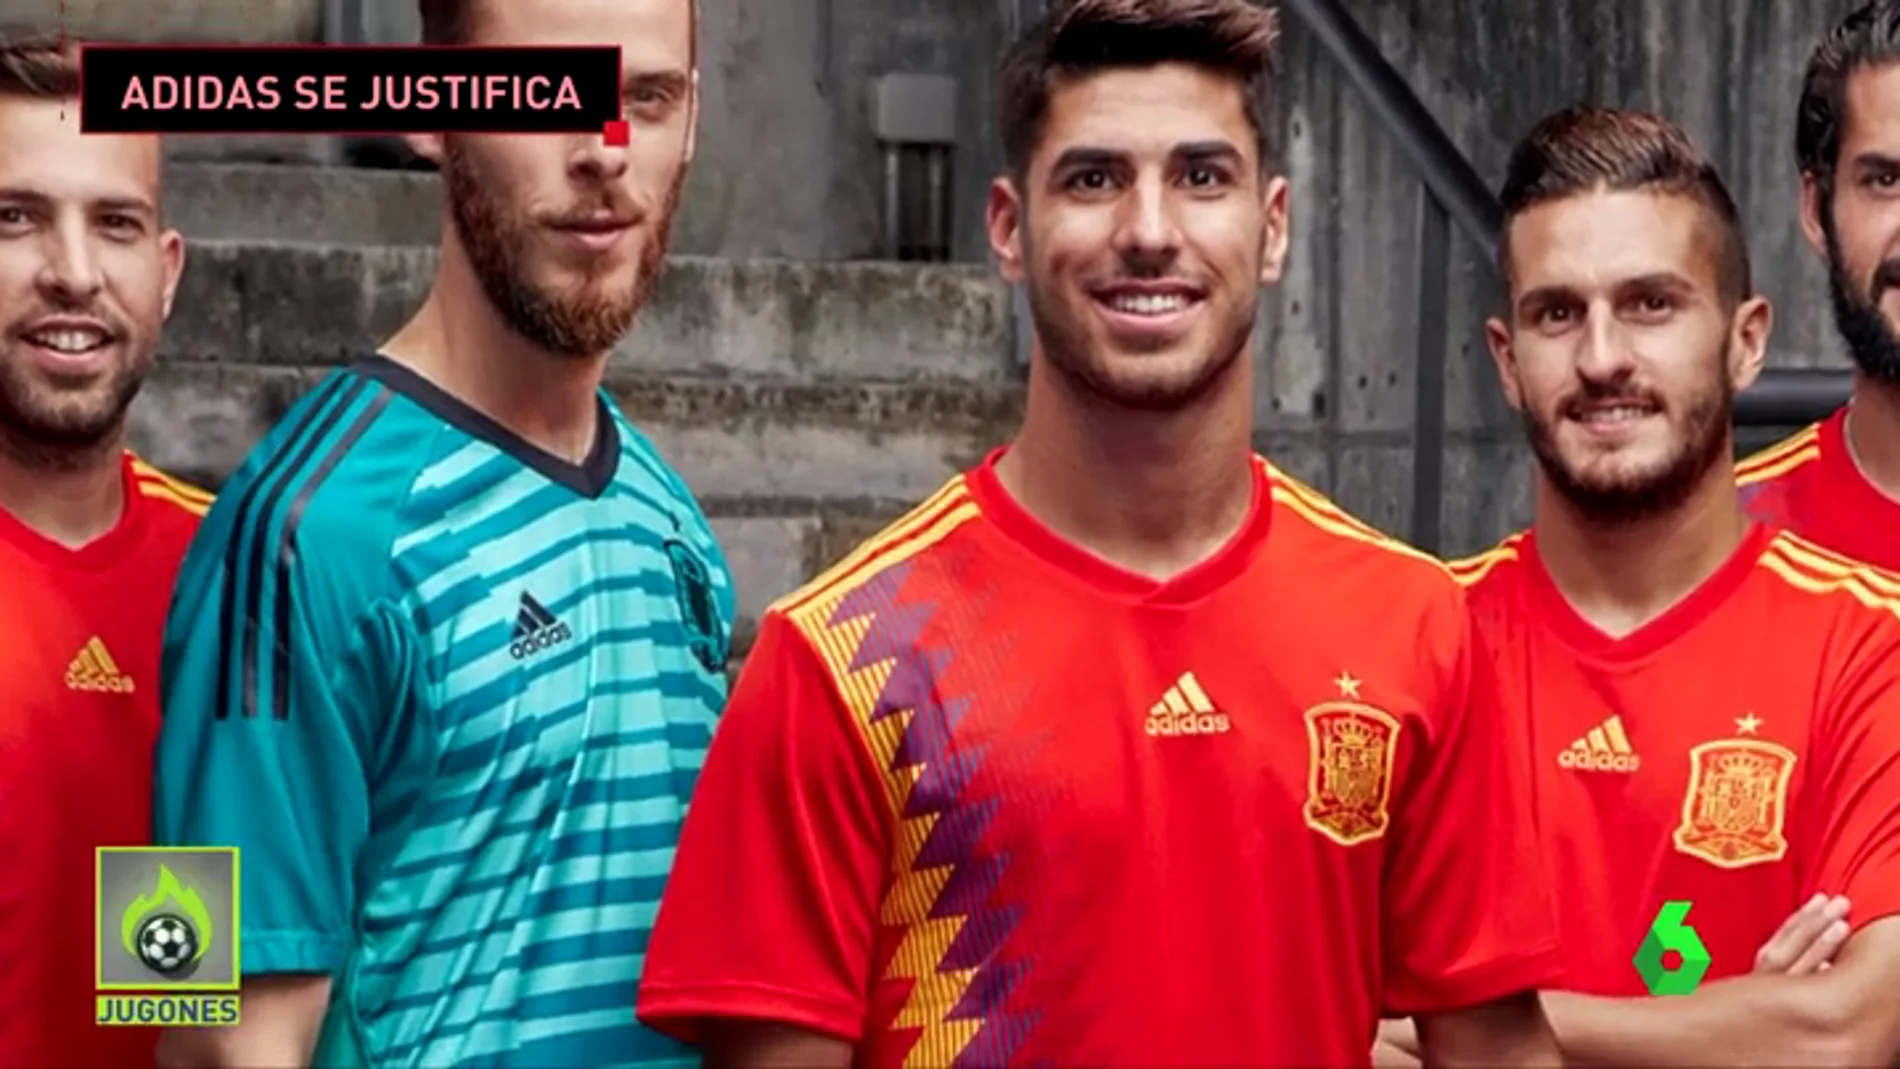 Salto asiático Tranquilizar Adidas responde a la polémica de la nueva camiseta de la selección española